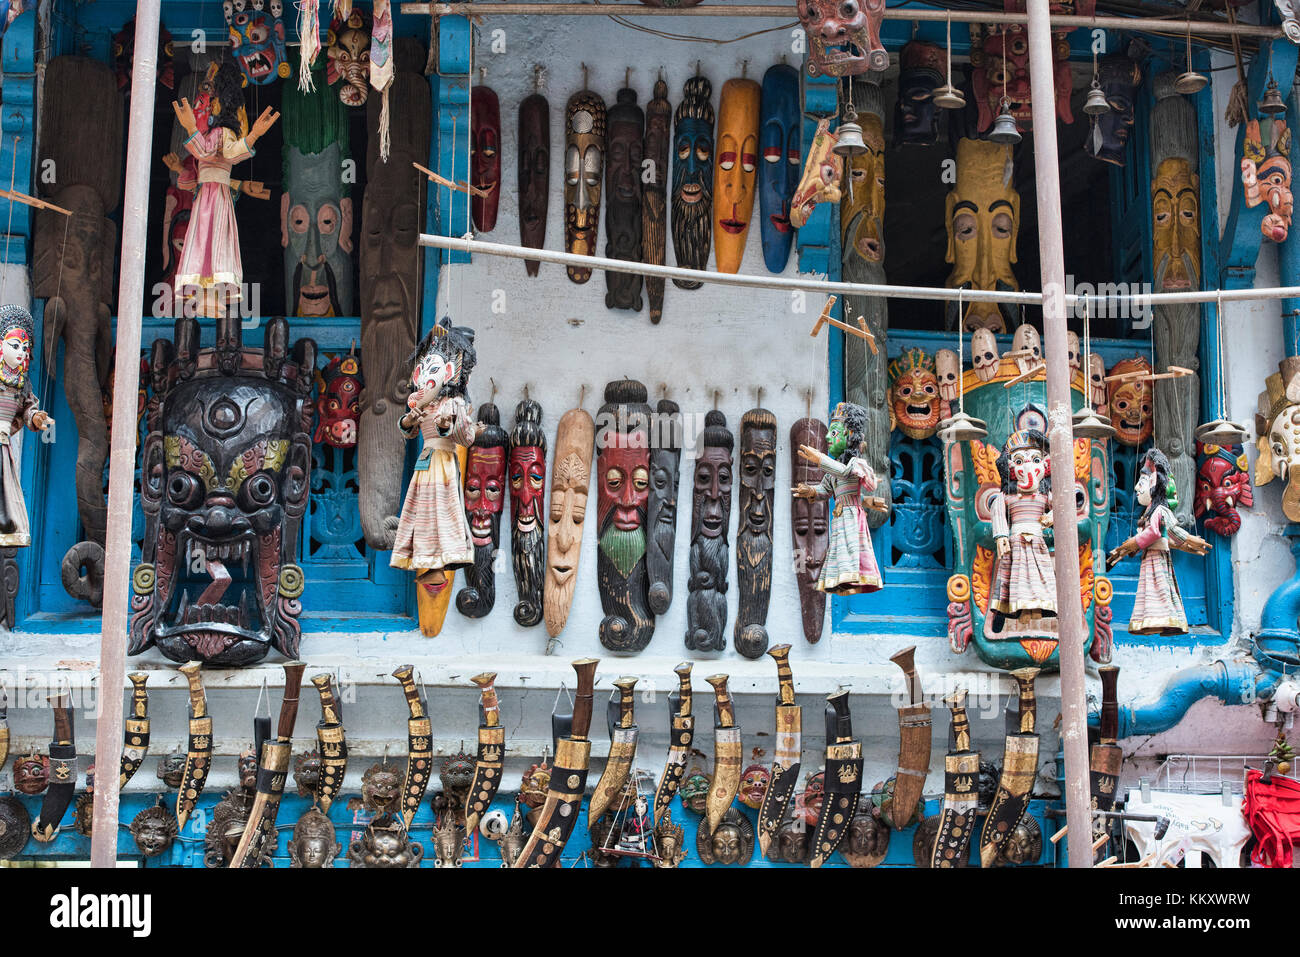 masks and kukri knives for sale, Kathmandu, Nepal Stock Photo